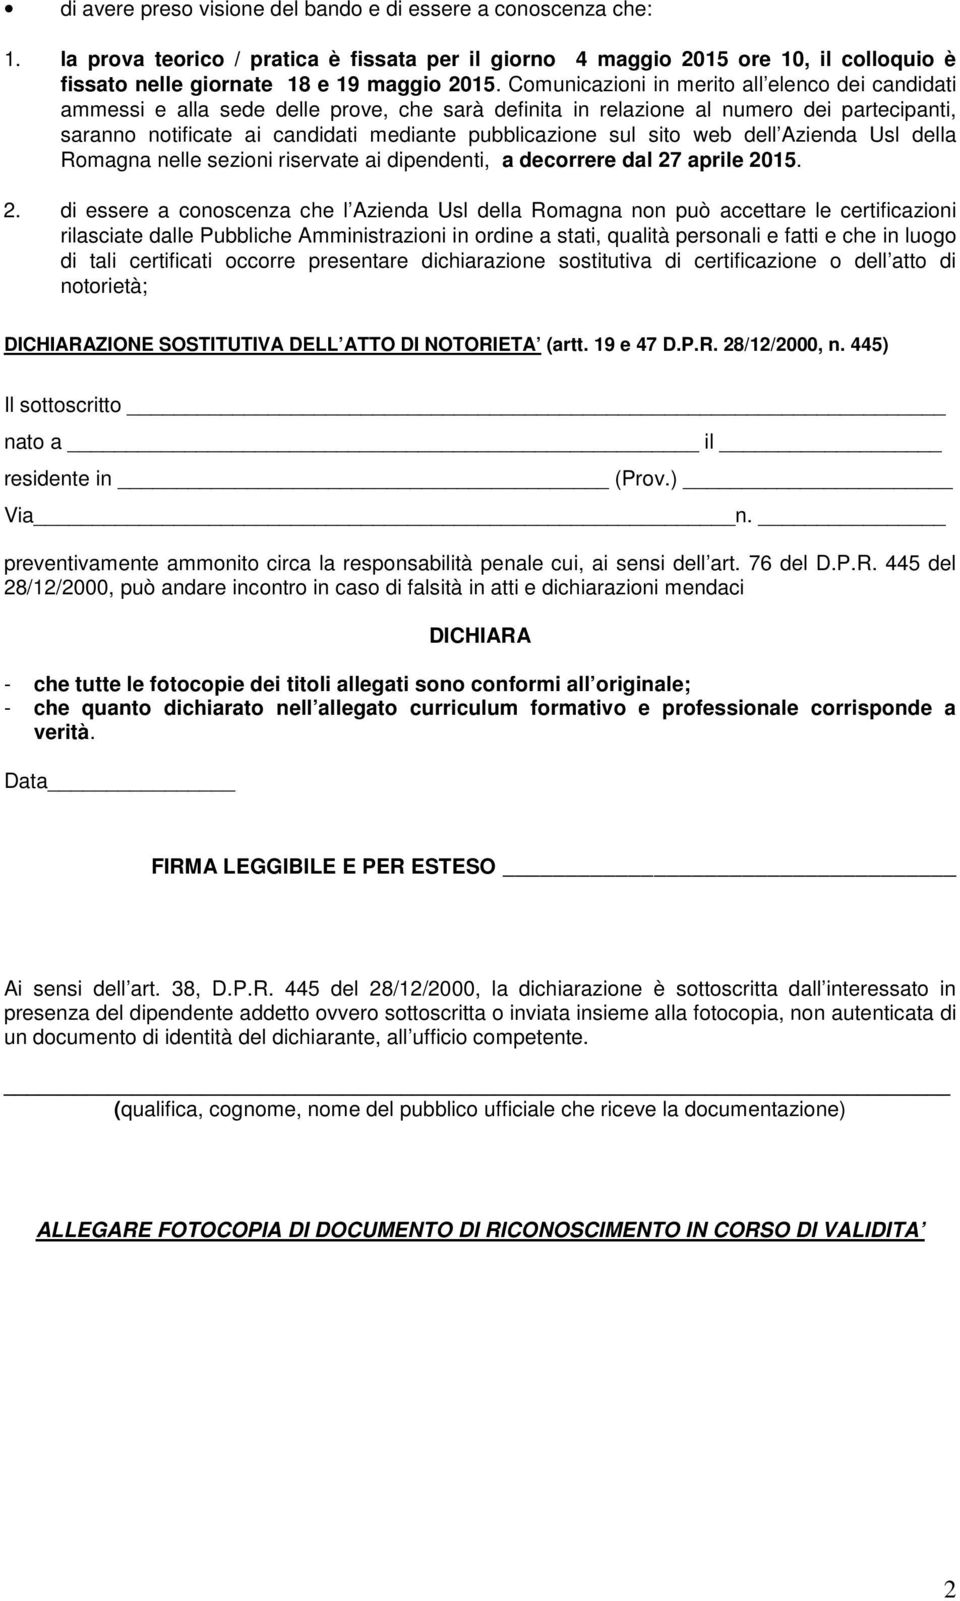 sito web dell Azienda Usl della Romagna nelle sezioni riservate ai dipendenti, a decorrere dal 27